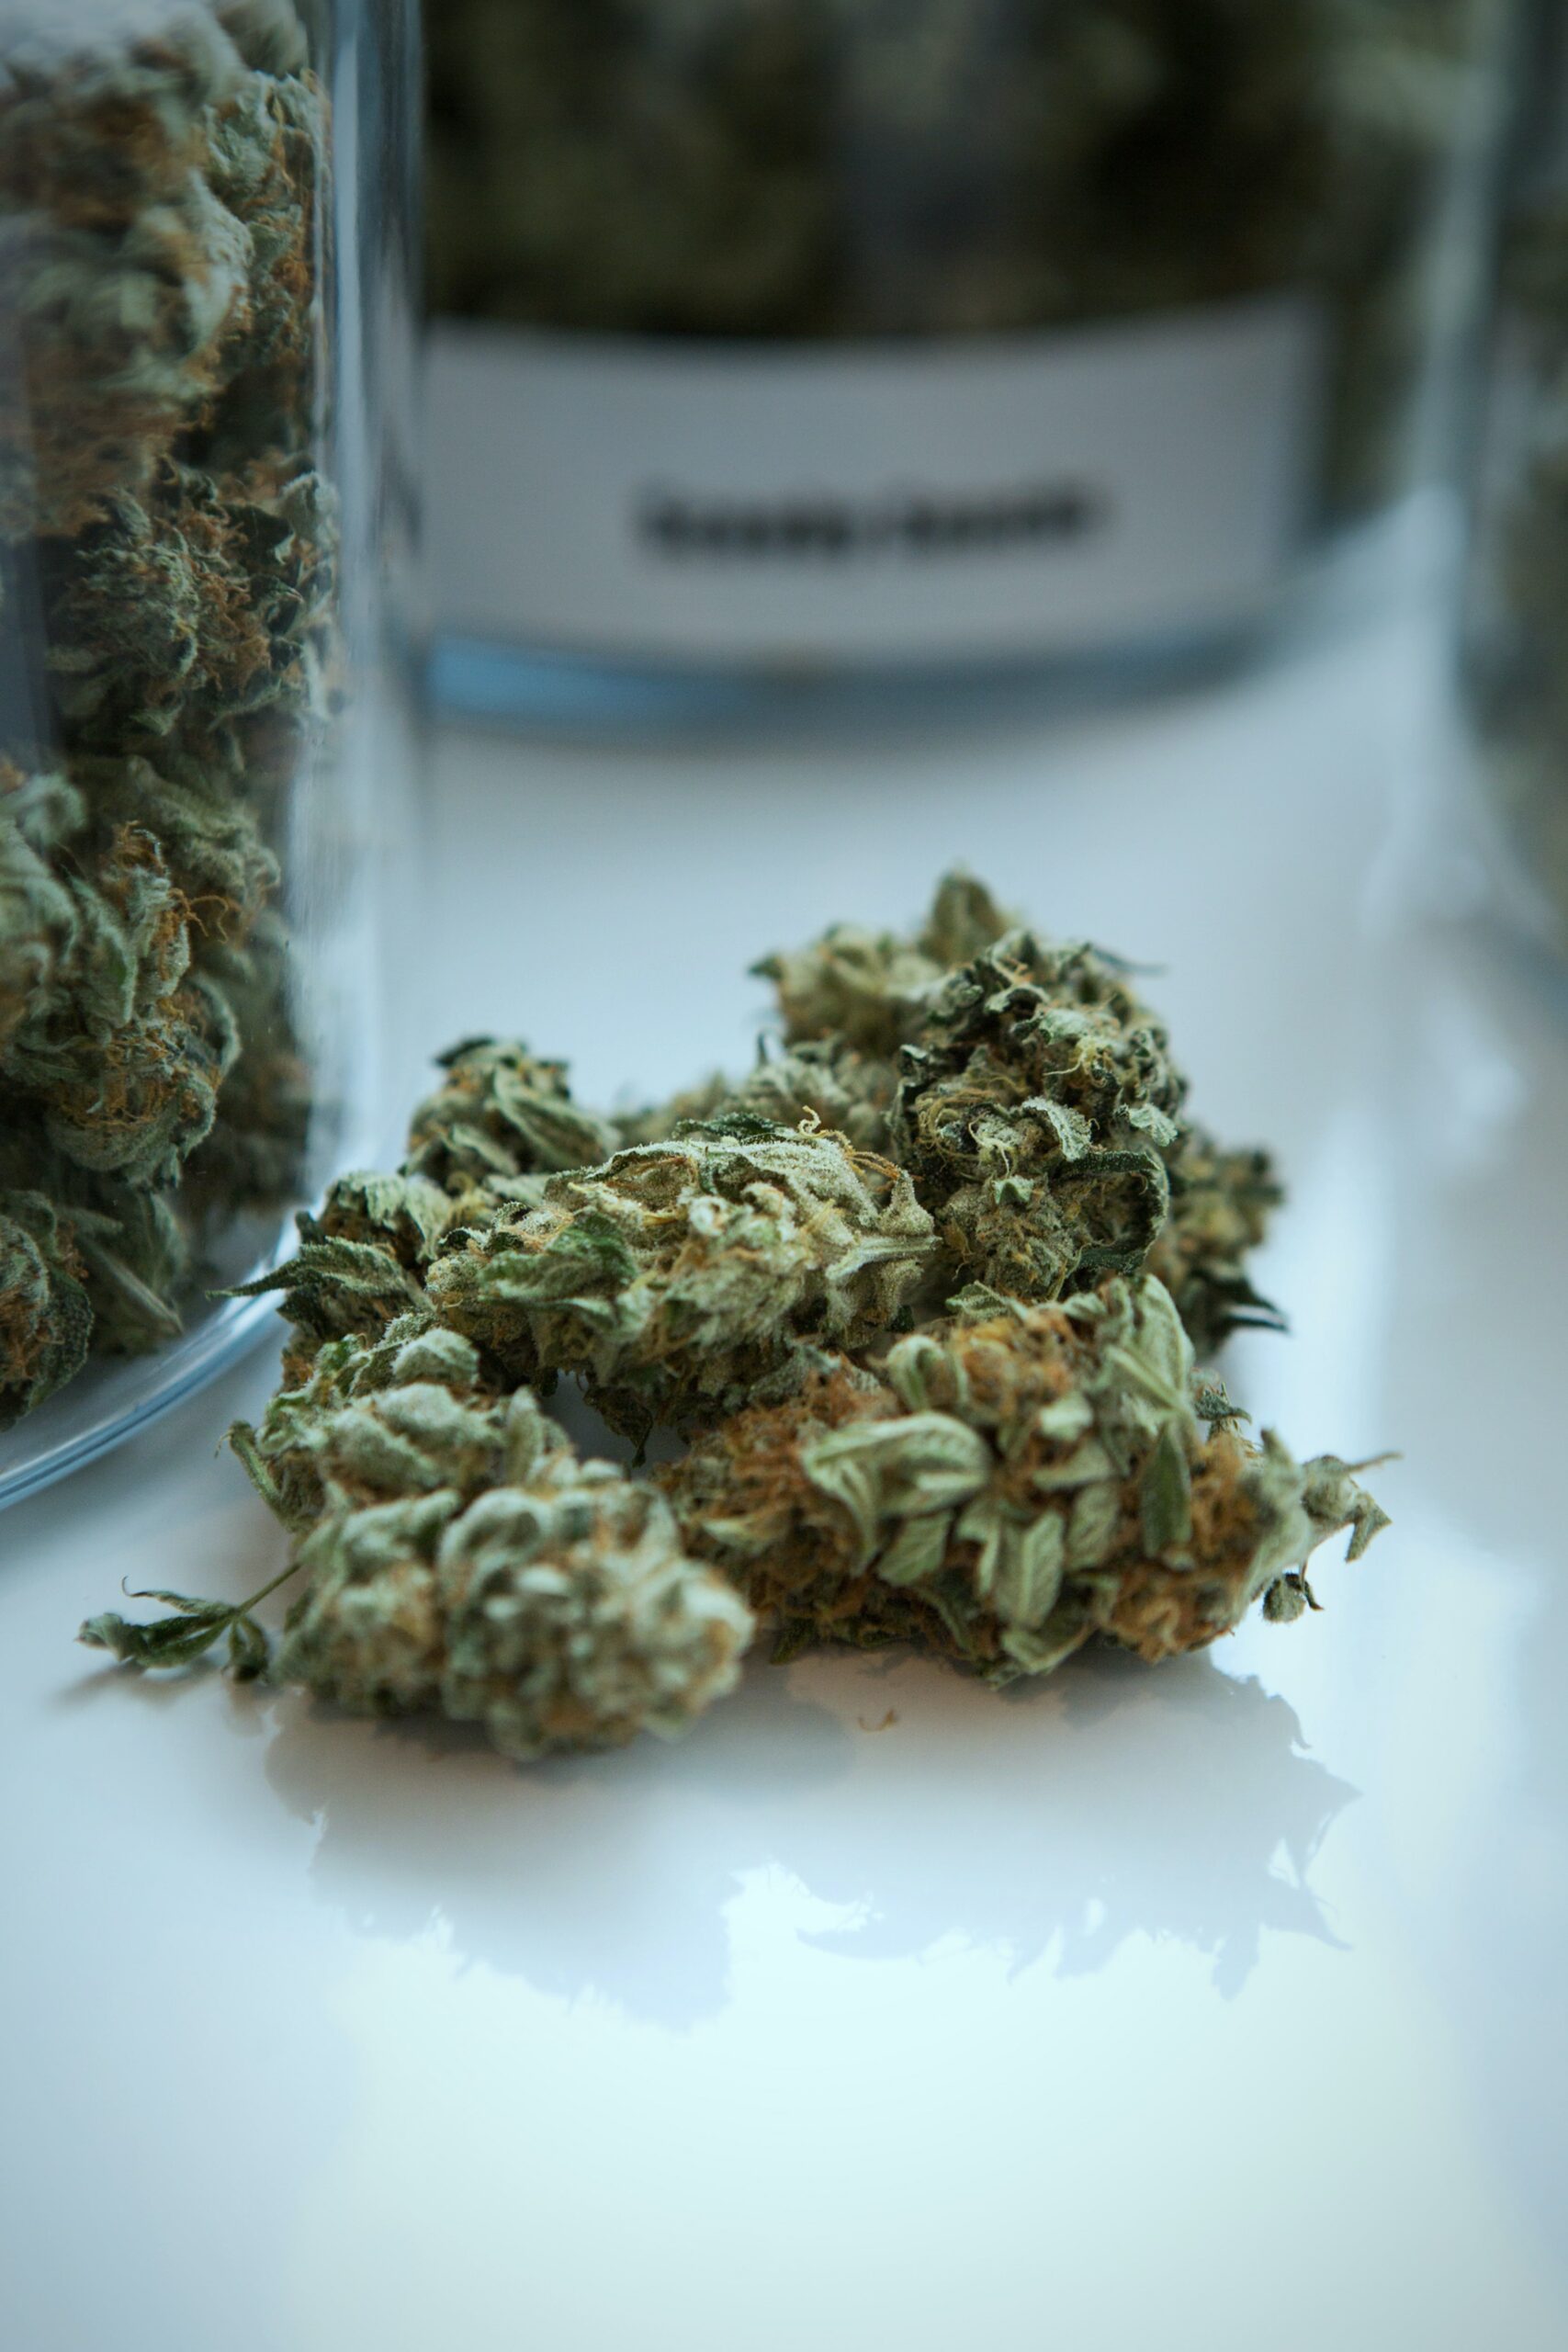 Leczenie Cukrzycy Medyczną Marihuaną I Kannabinoidami Hemplopl 2749